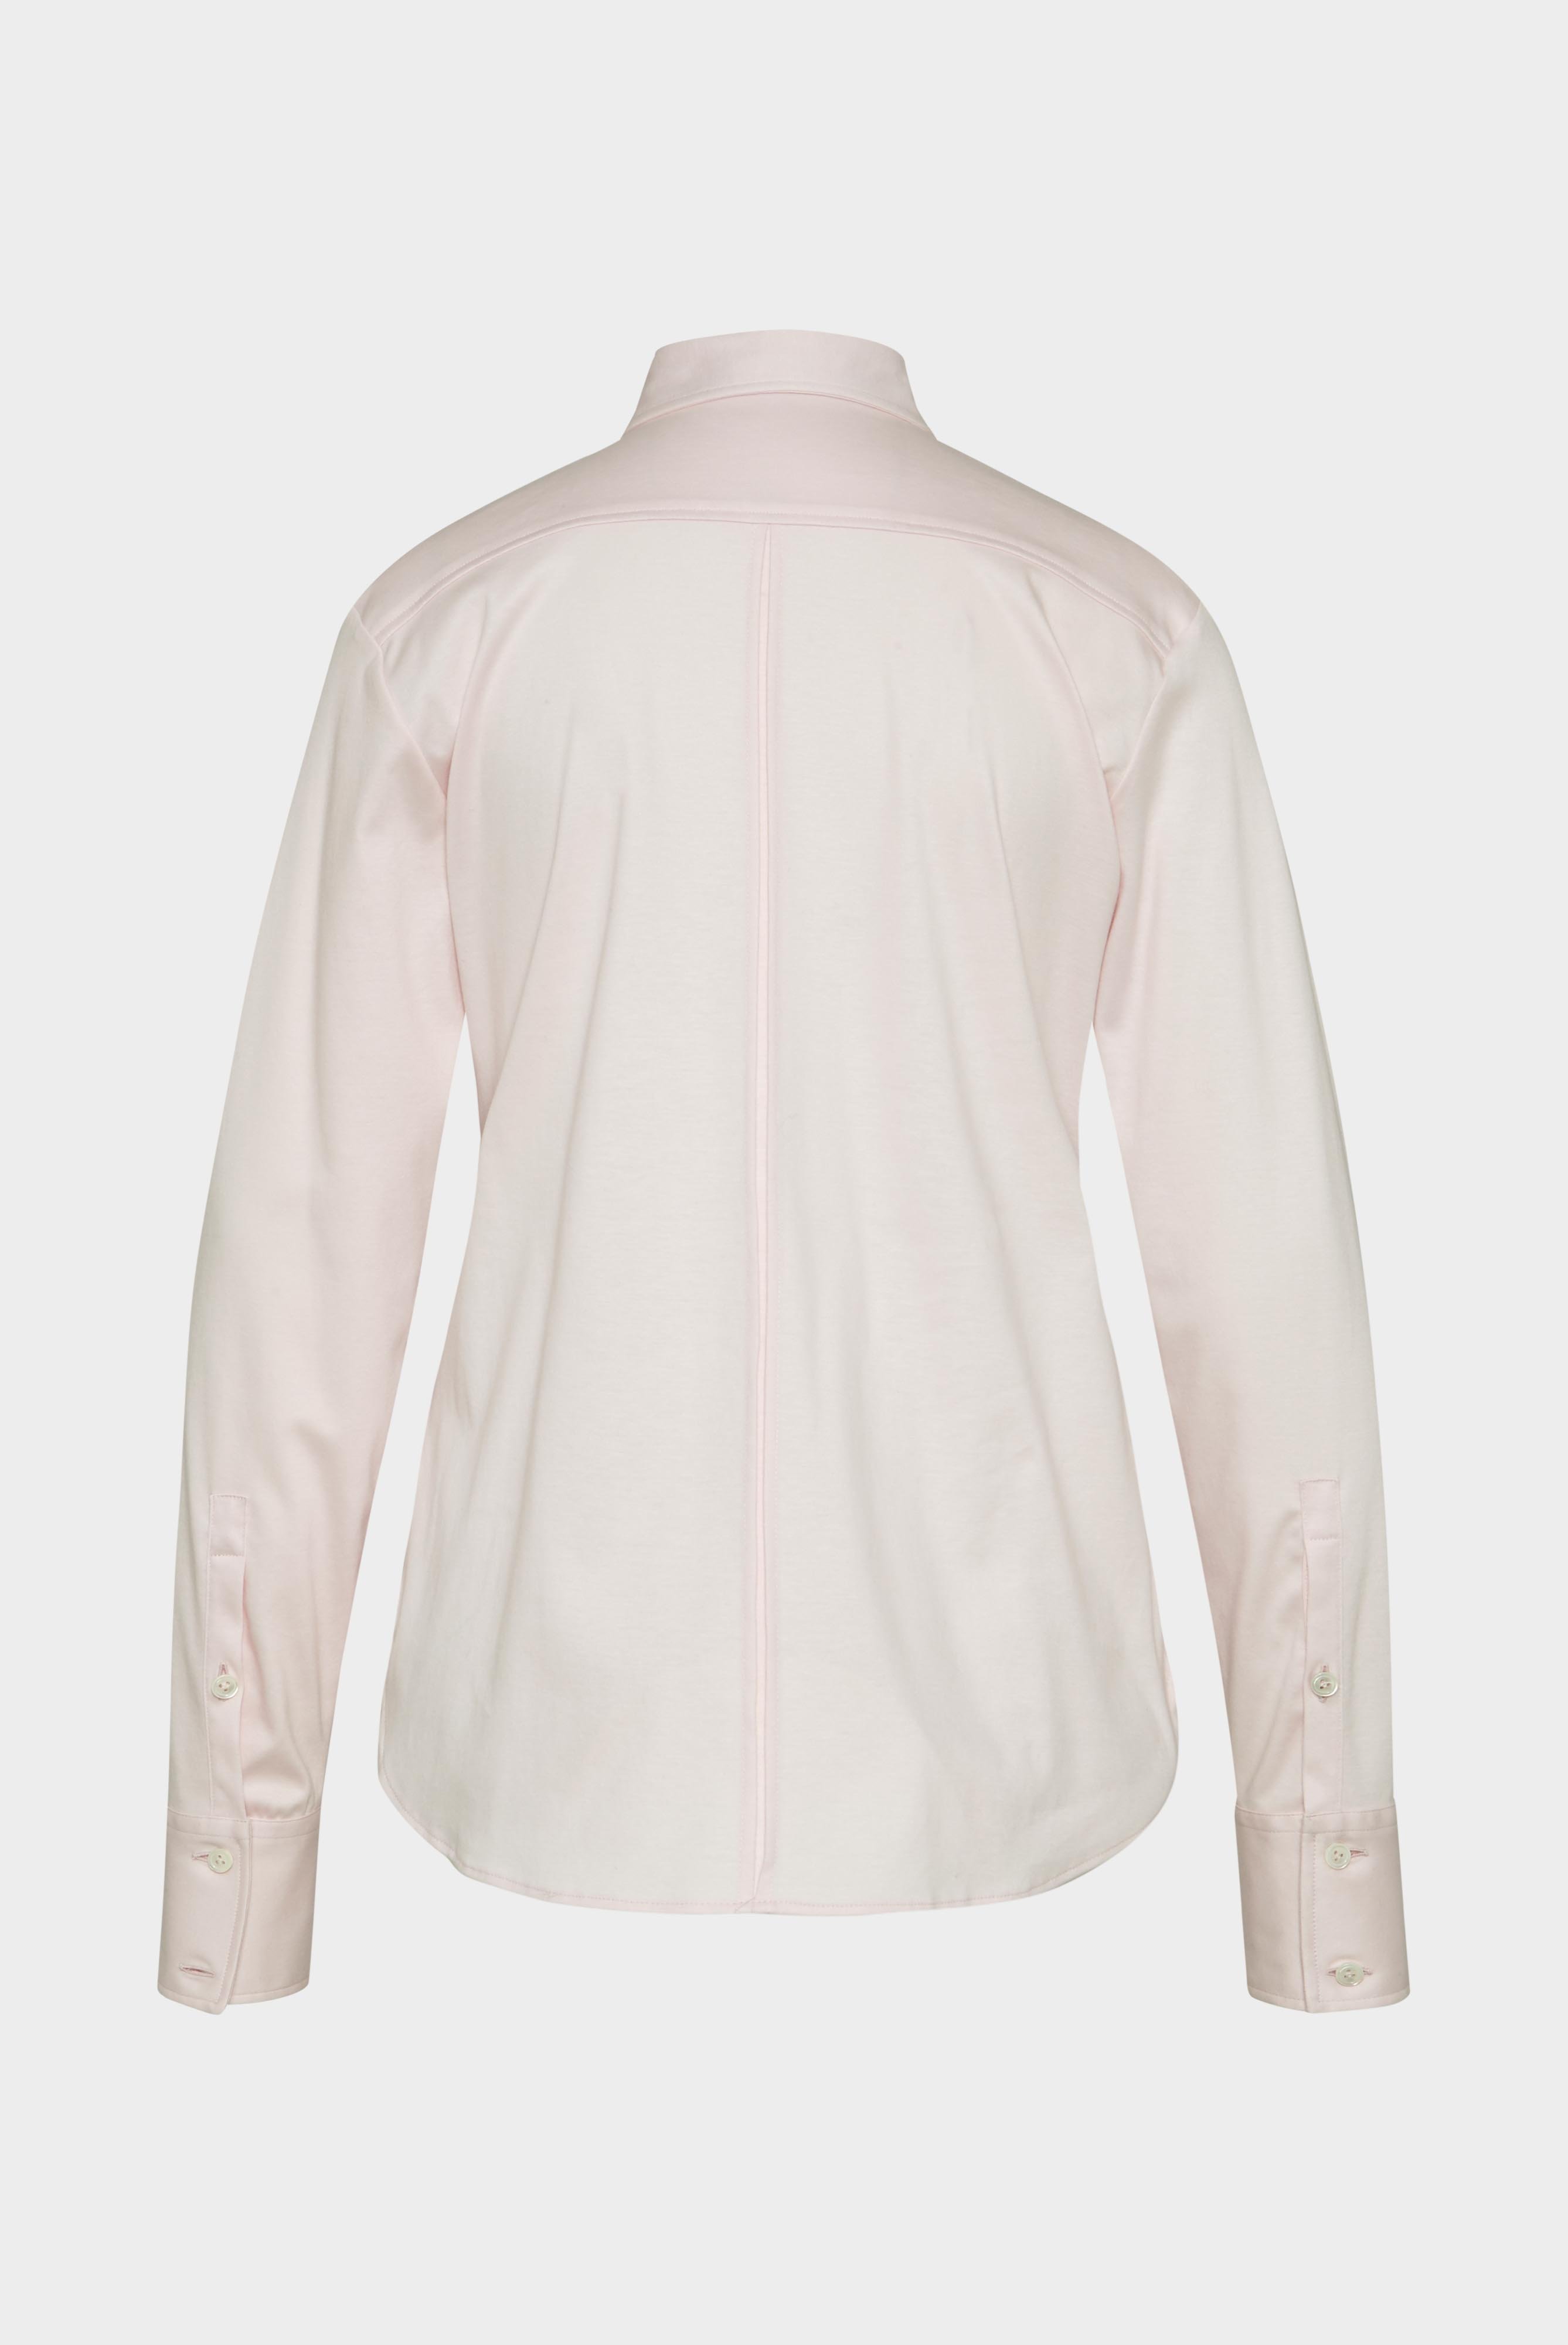 Casual Blusen+Taillierte Jersey Hemdbluse aus Schweizer Baumwolle+05.603Y..180031.510.42